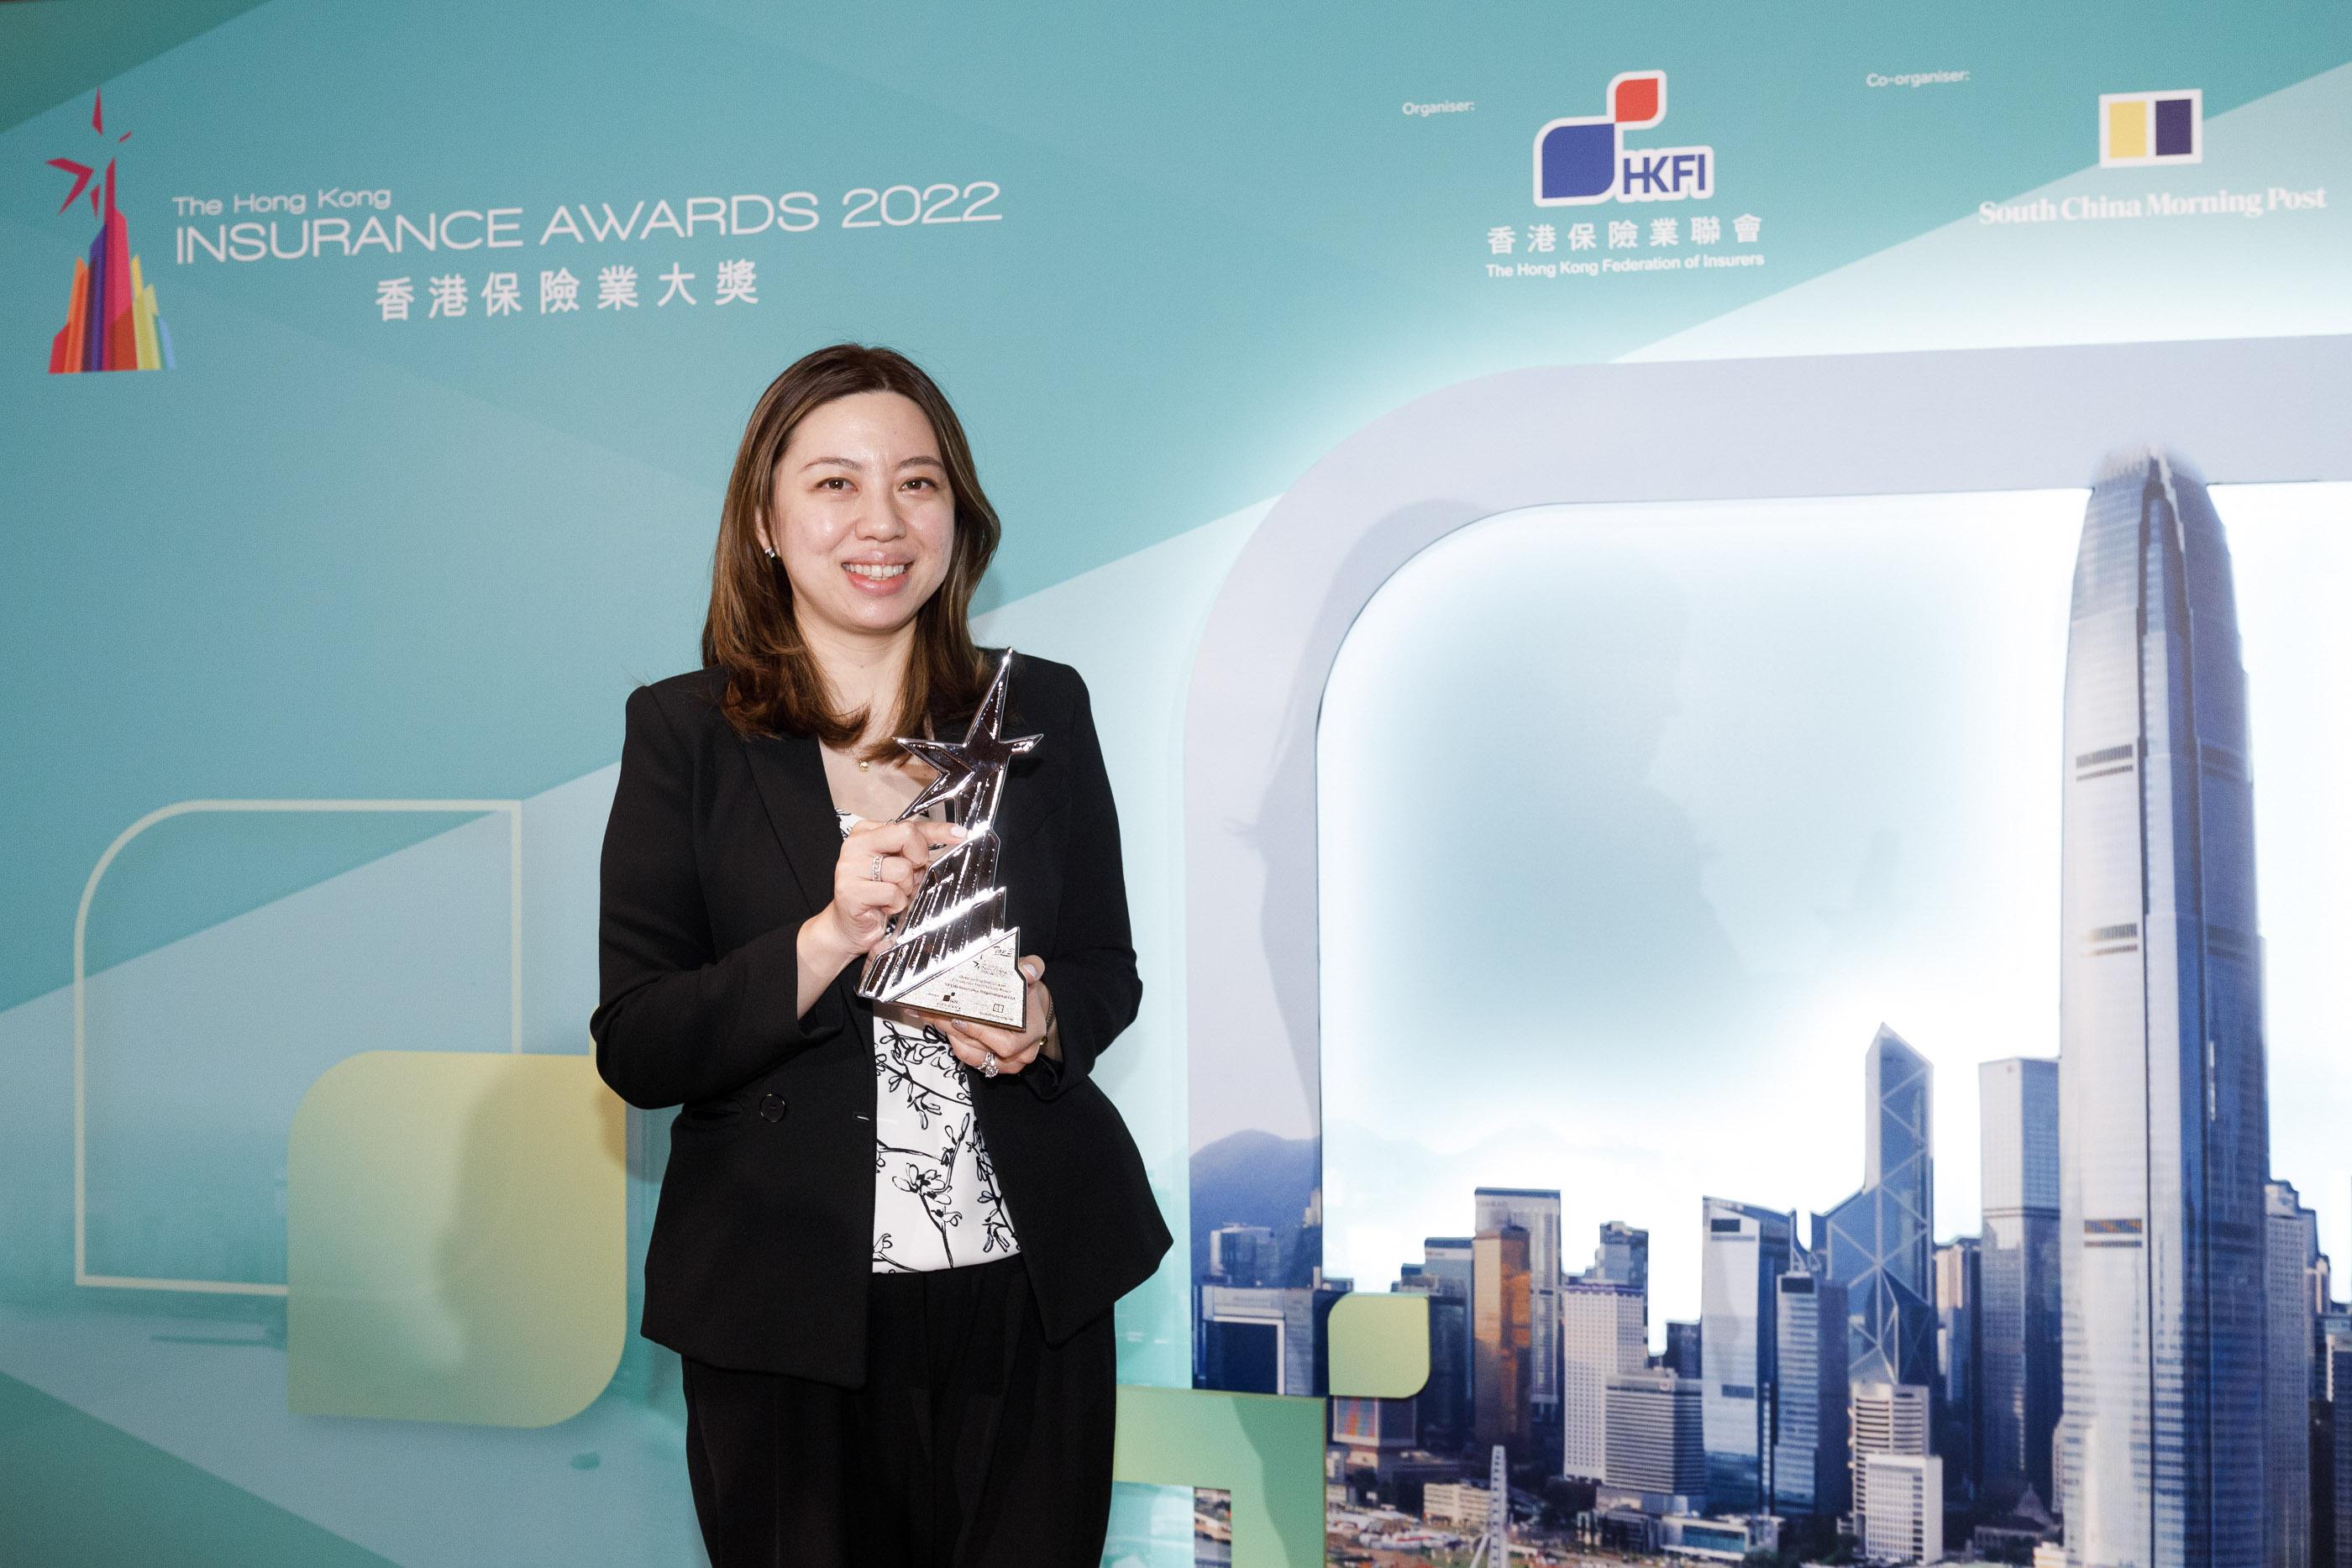 万通保险产品策略及定价部主管许丹萍小姐出席《香港保险业大奖 2022 》颁奖典礼，代表公司接受＂杰出创意产品／服务大奖 ─ 人寿保险（健康保障）＂年度三强奖项。